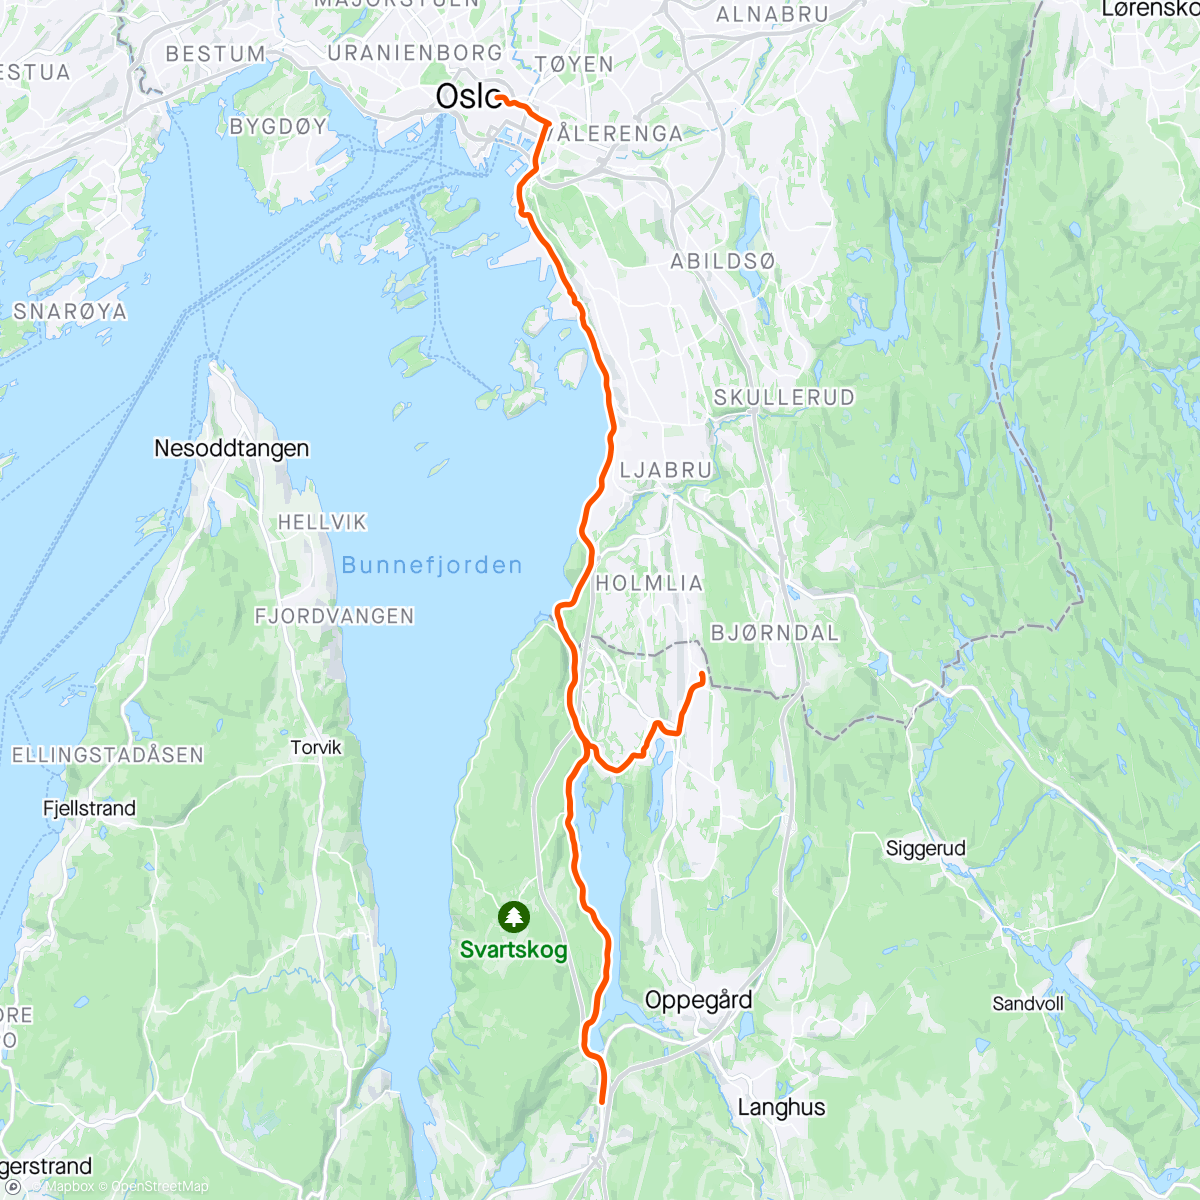 「Hjem fra Jobb - 40 / 20 på Gamla」活動的地圖